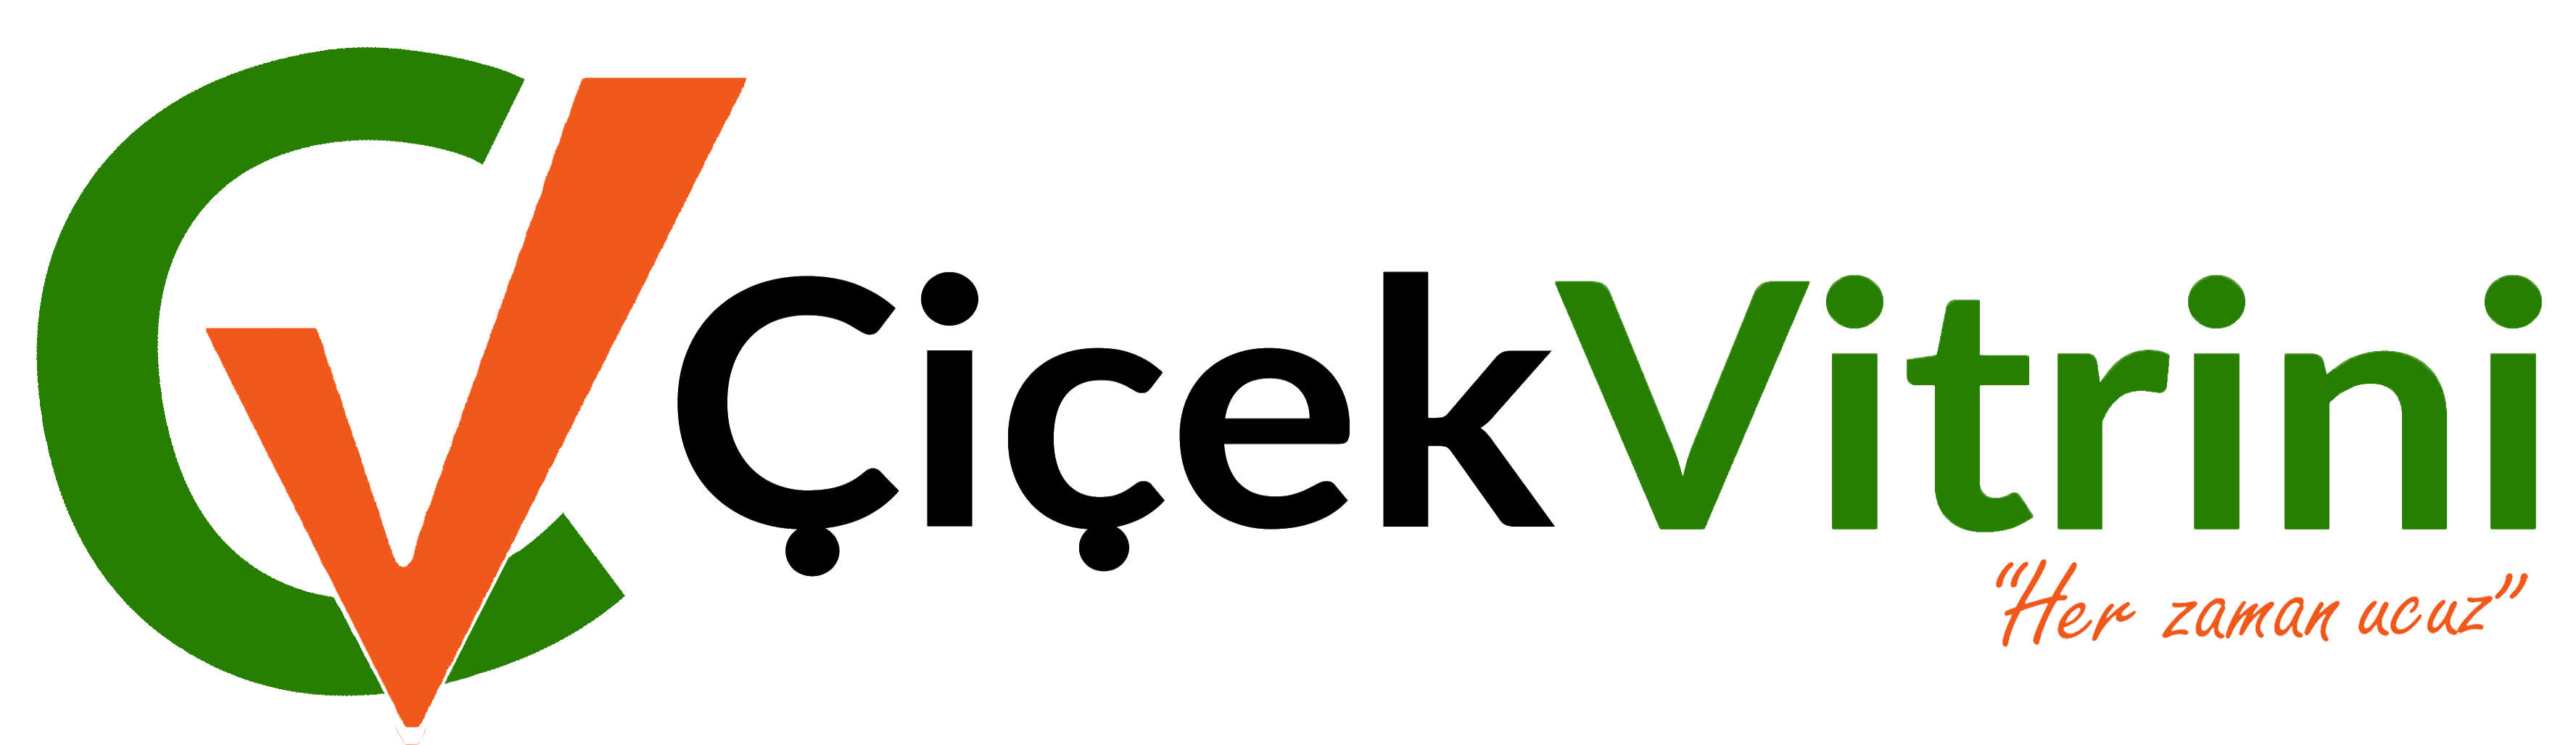 Çiçek Vitrini logo